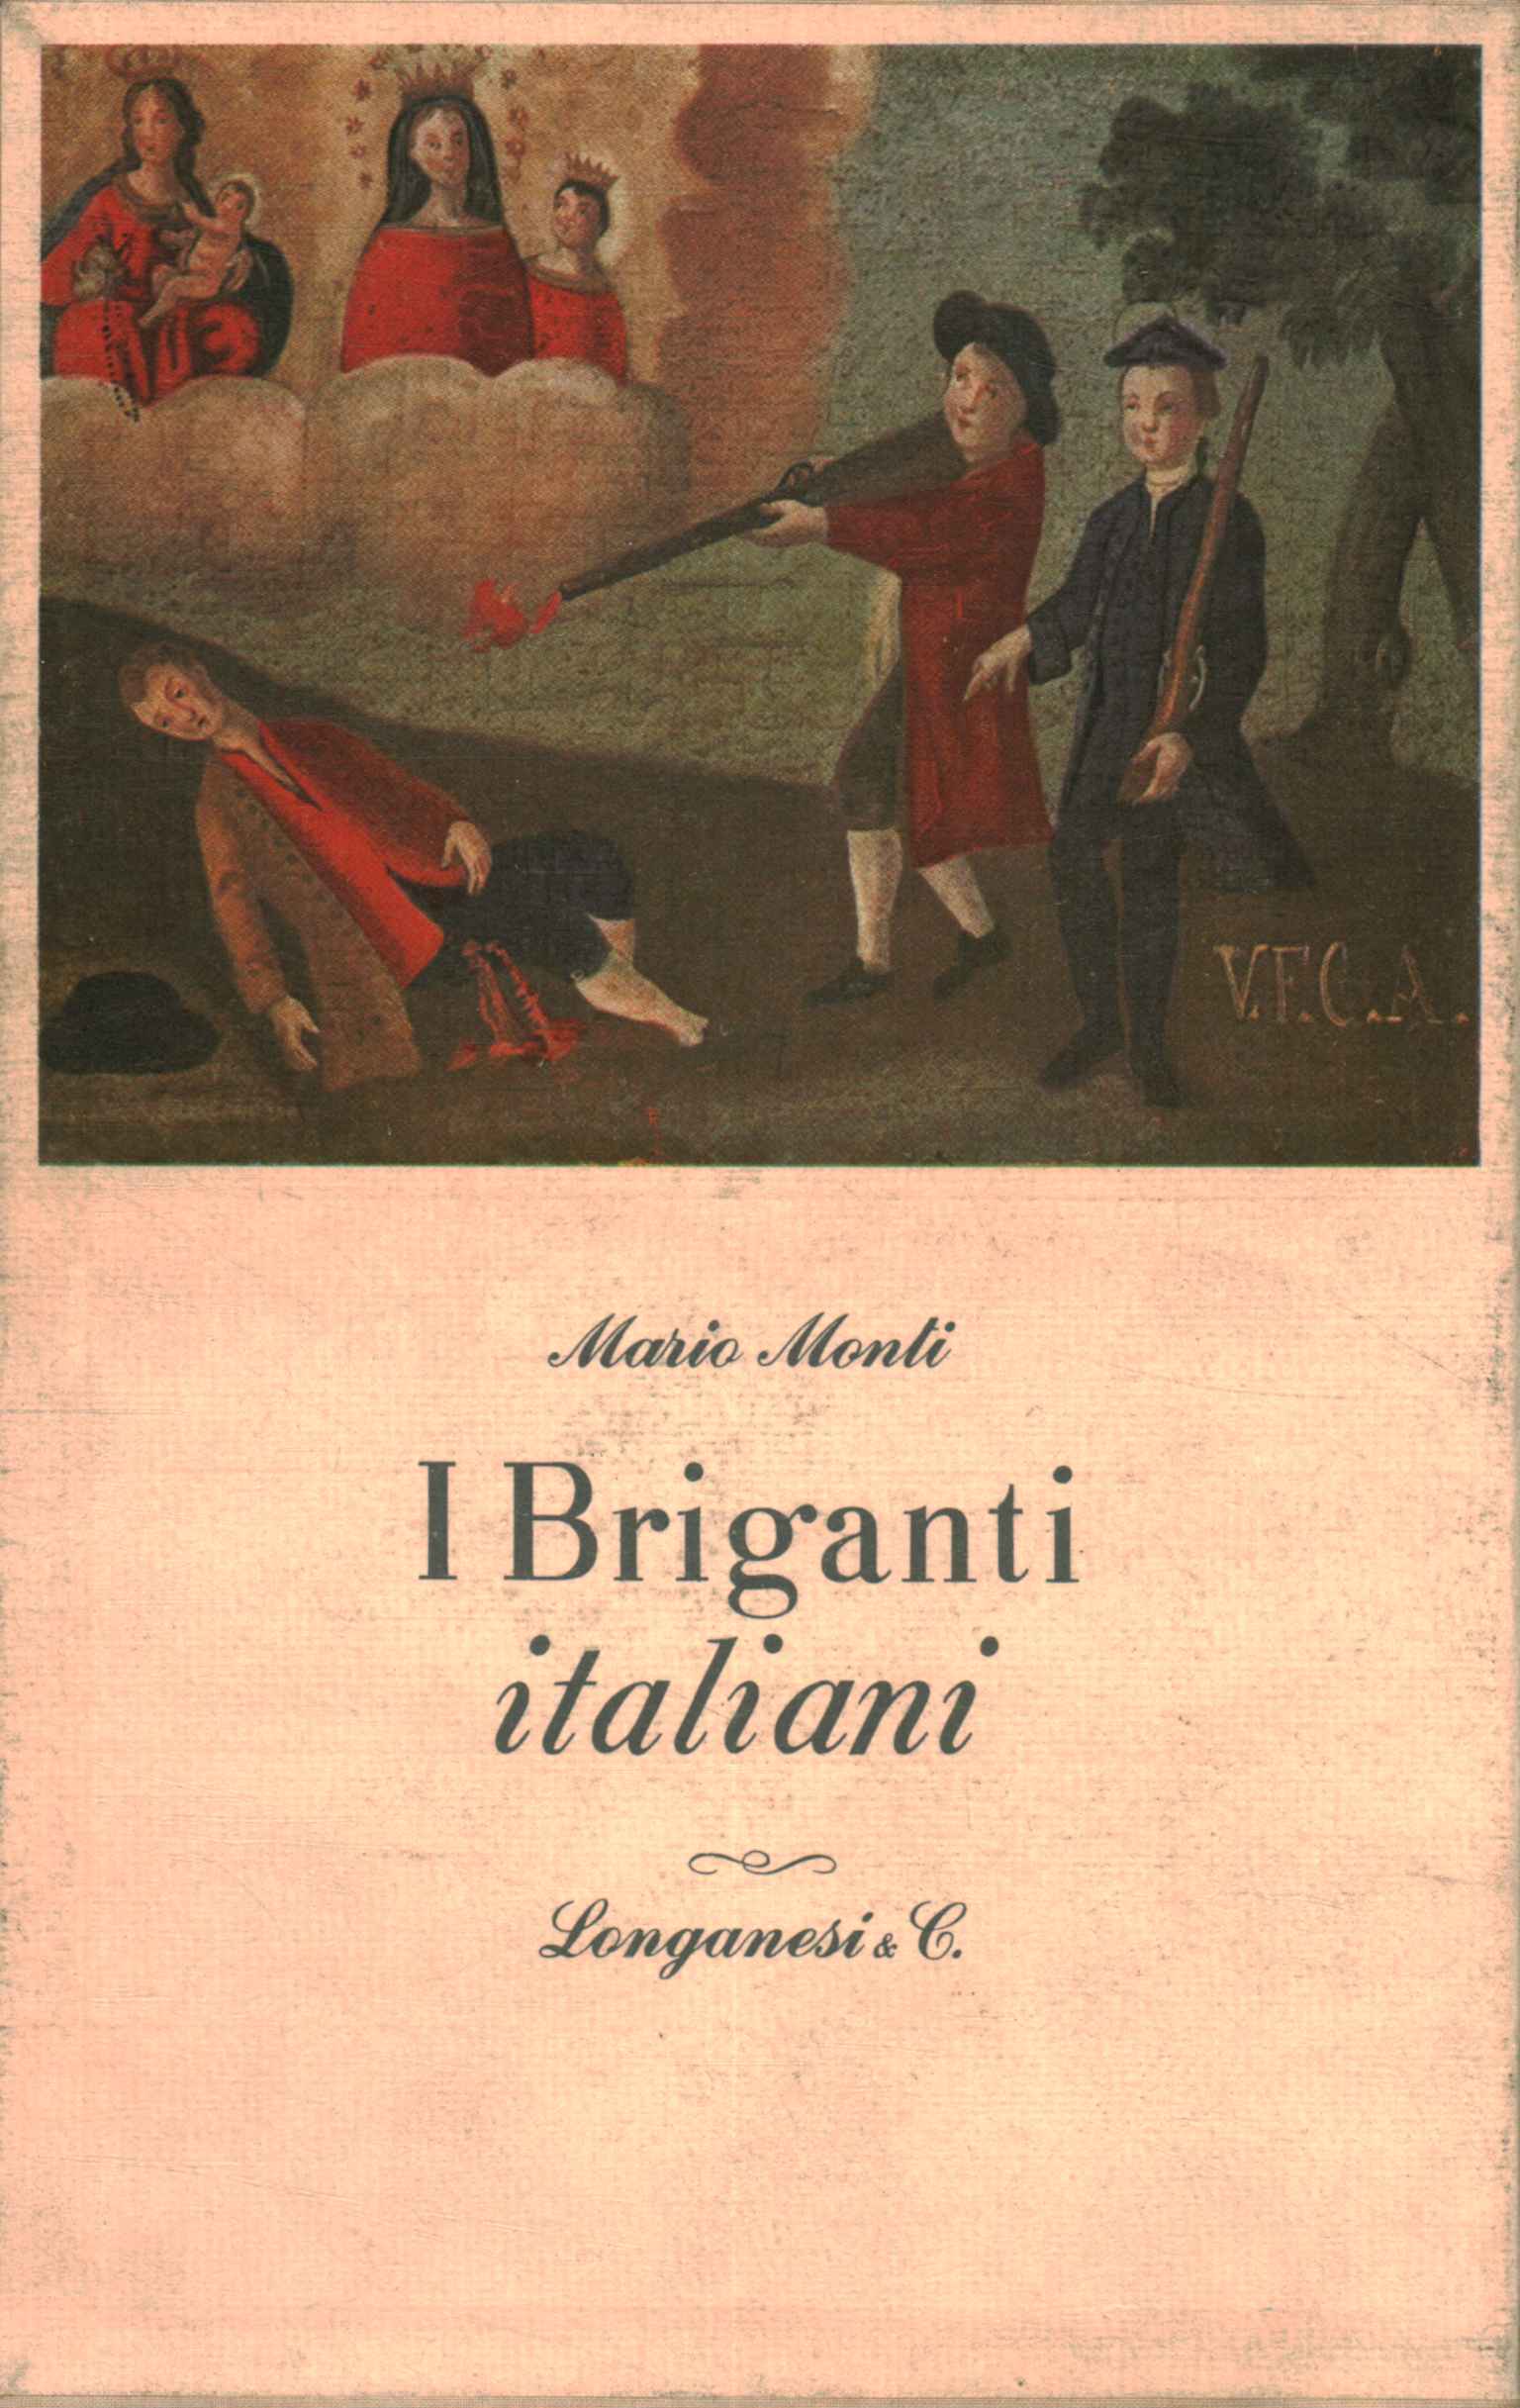 The Italian Brigands